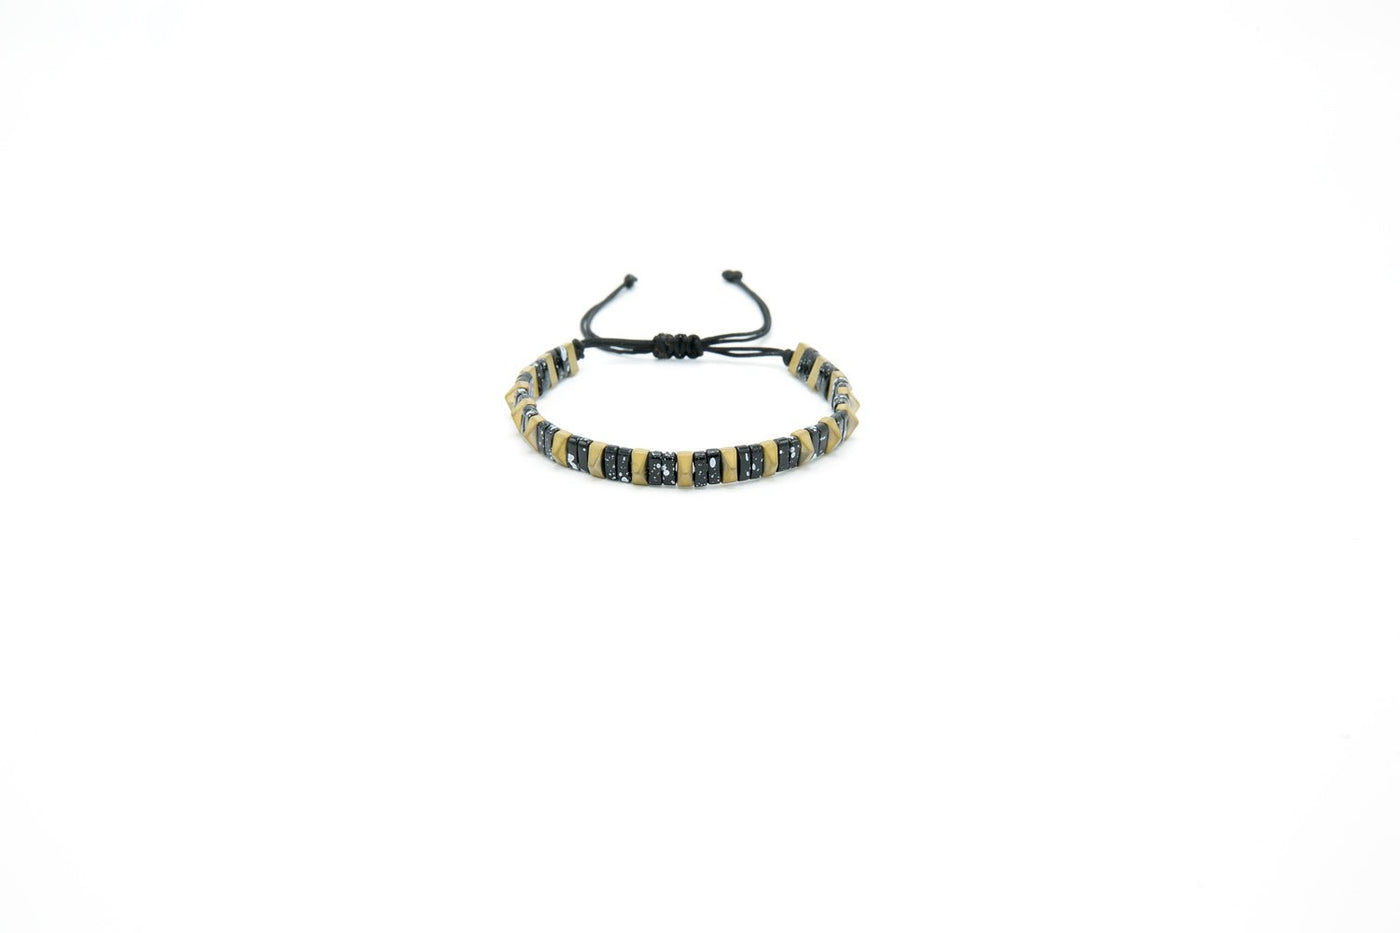 Men’s Natural Stone Beaded Bracelet, Set of 3 Bracelets with Gemstone Hematite Beaded Bracelet, Tiger Eye Bracelet, Leather Bracelet - Ozzell London